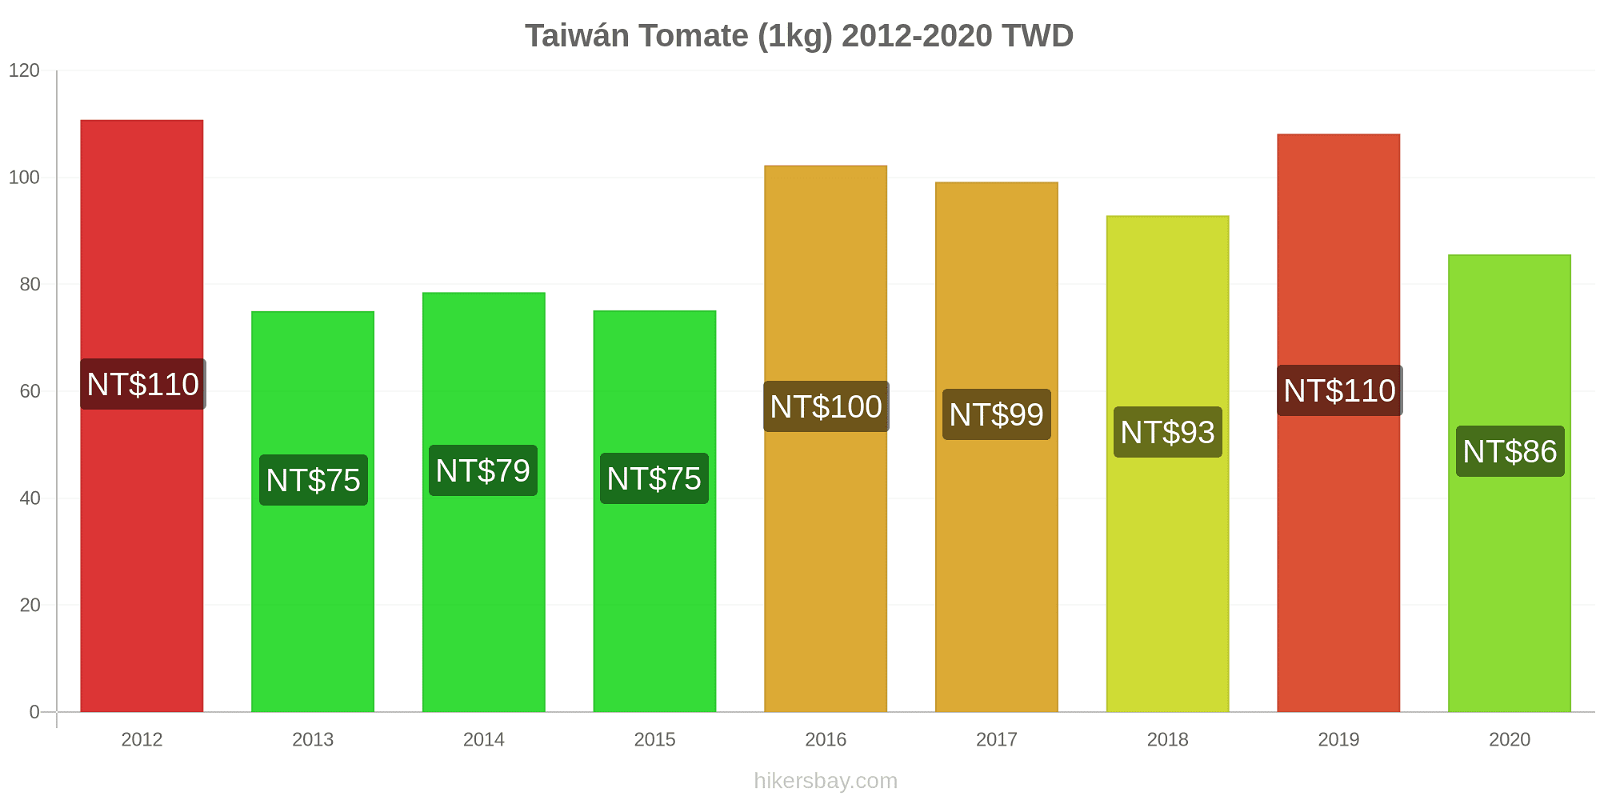 Taiwán cambios de precios Tomate (1kg) hikersbay.com